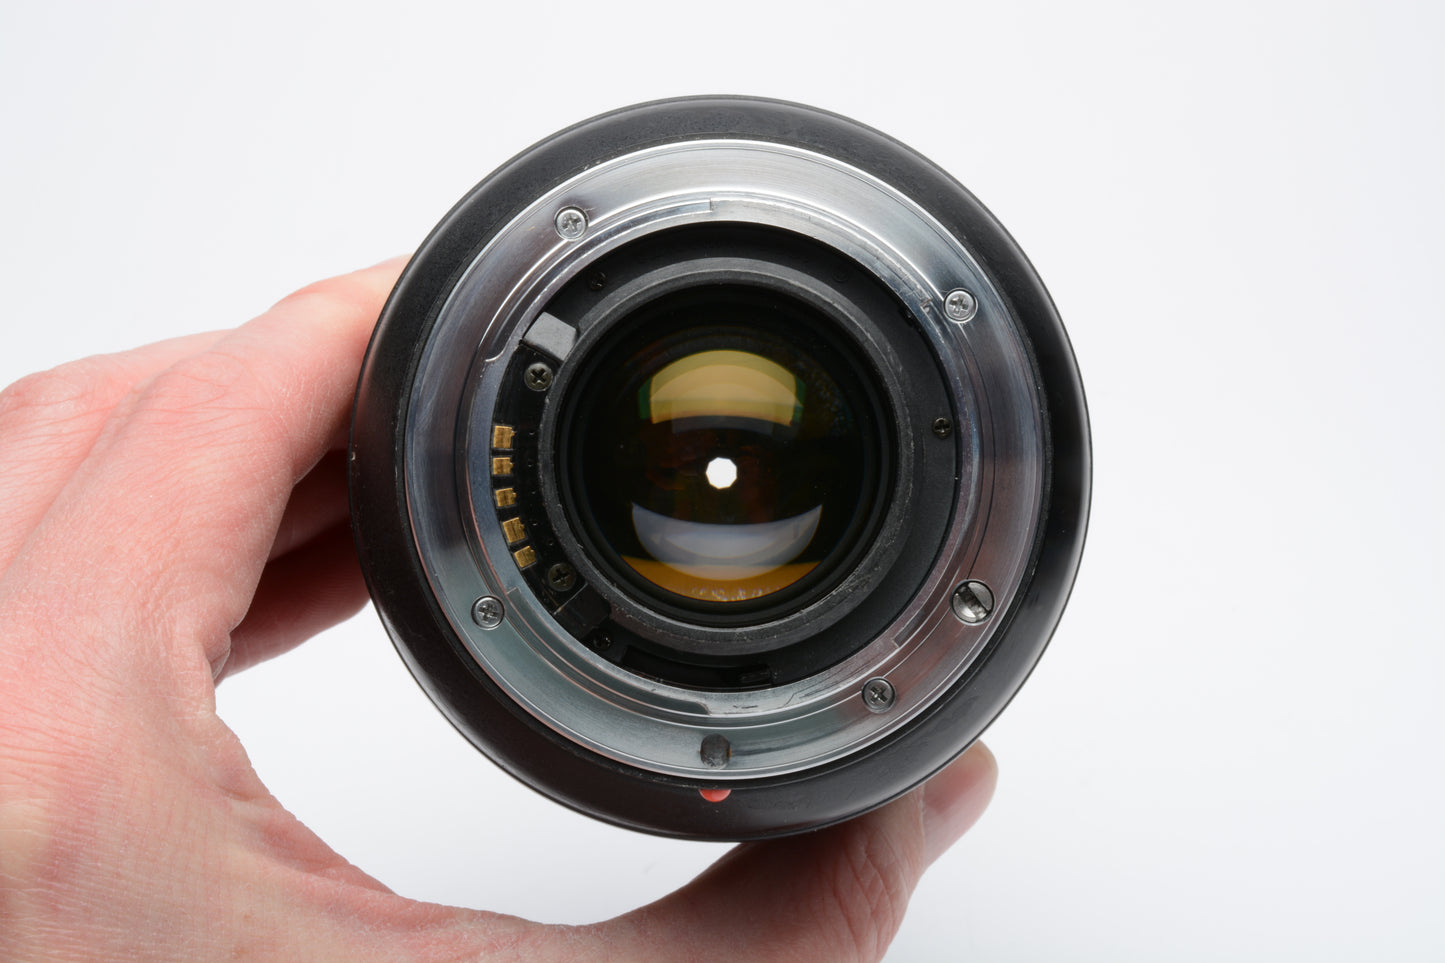 Minolta AF 28-70mm F2.8 Lens for Minolta Sony A Mount, caps, Sharp!